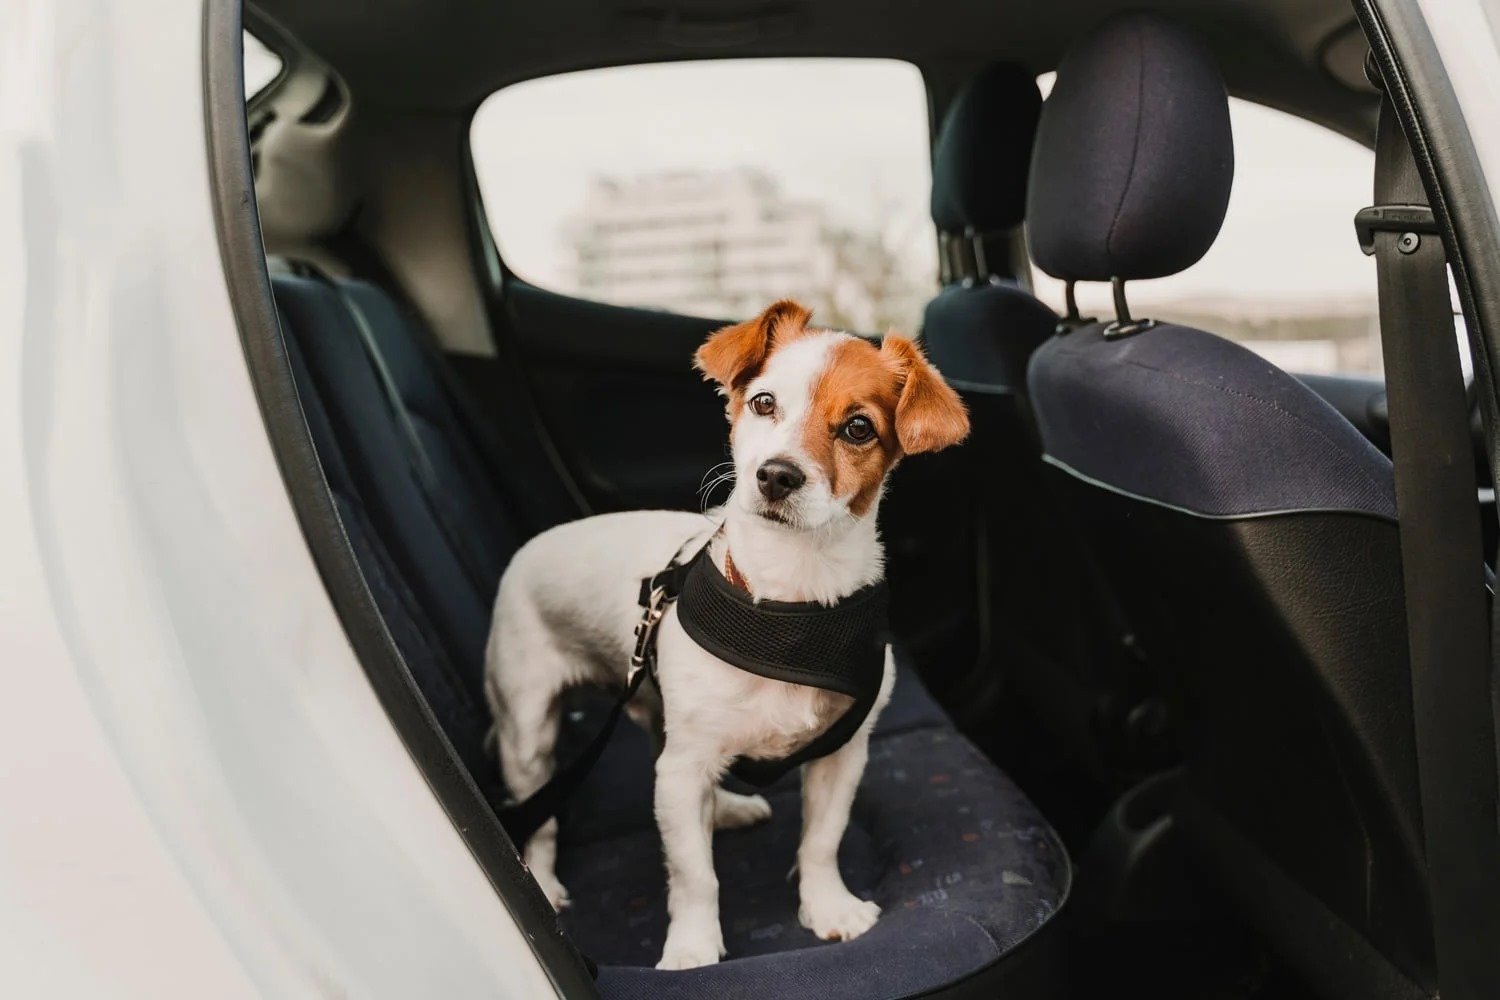 Biztonságban az autóban is - Hám van a kutyán, melyet a biztonsági öv csatjához rögzítettek